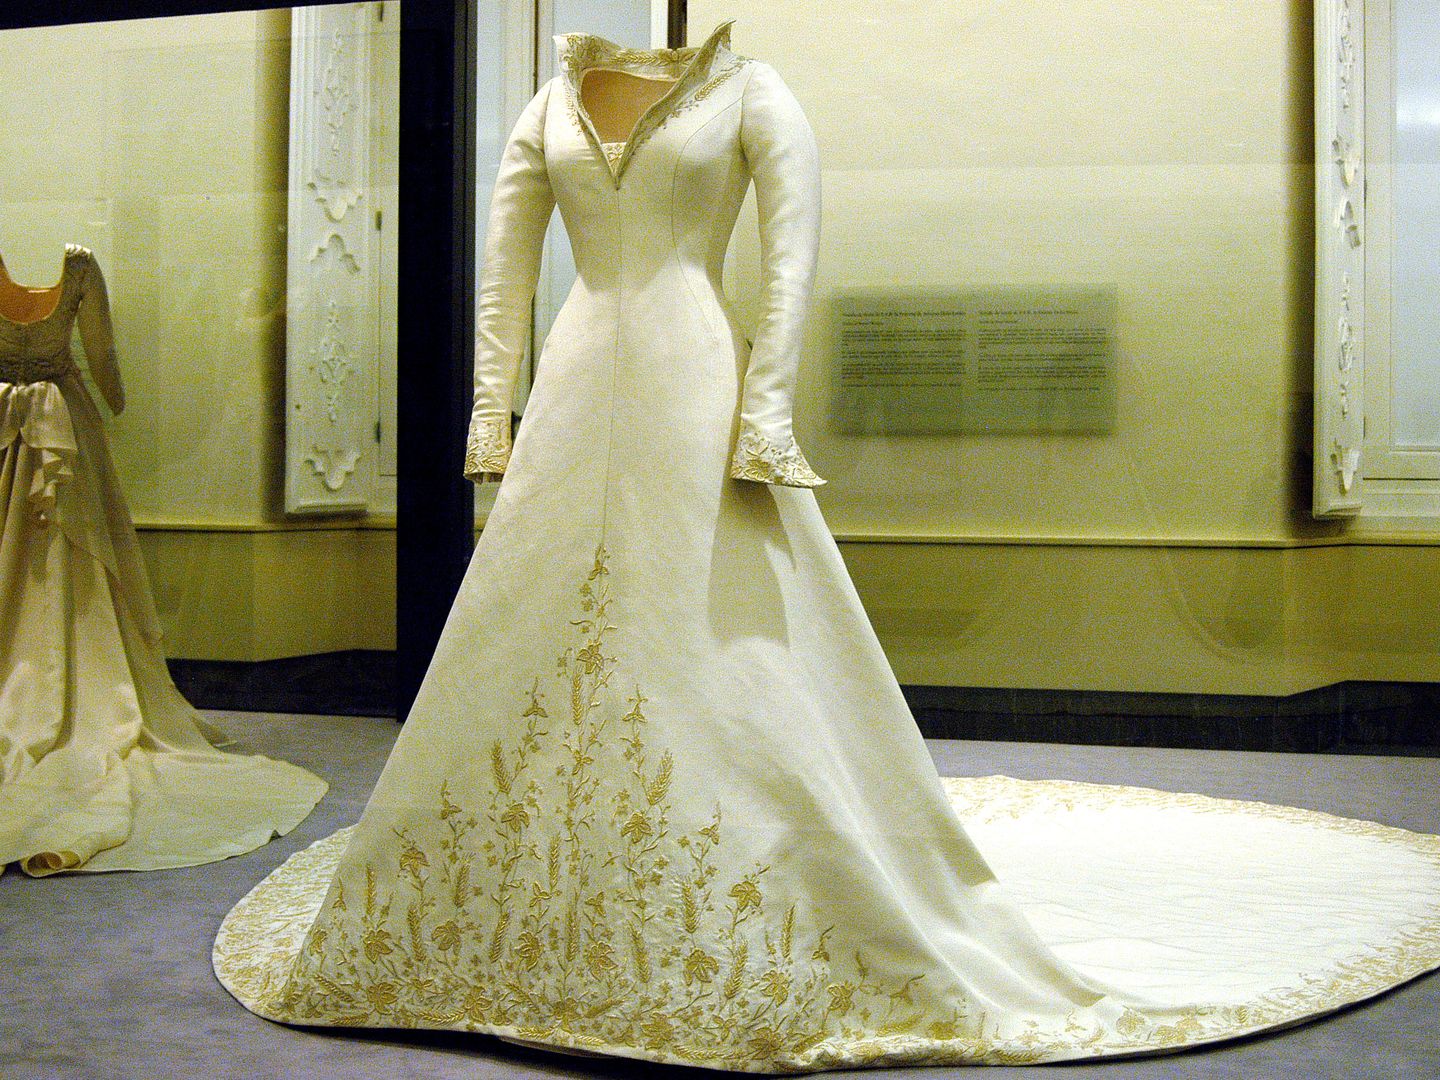 El vestido, tal y como fue expuesto después de la boda)